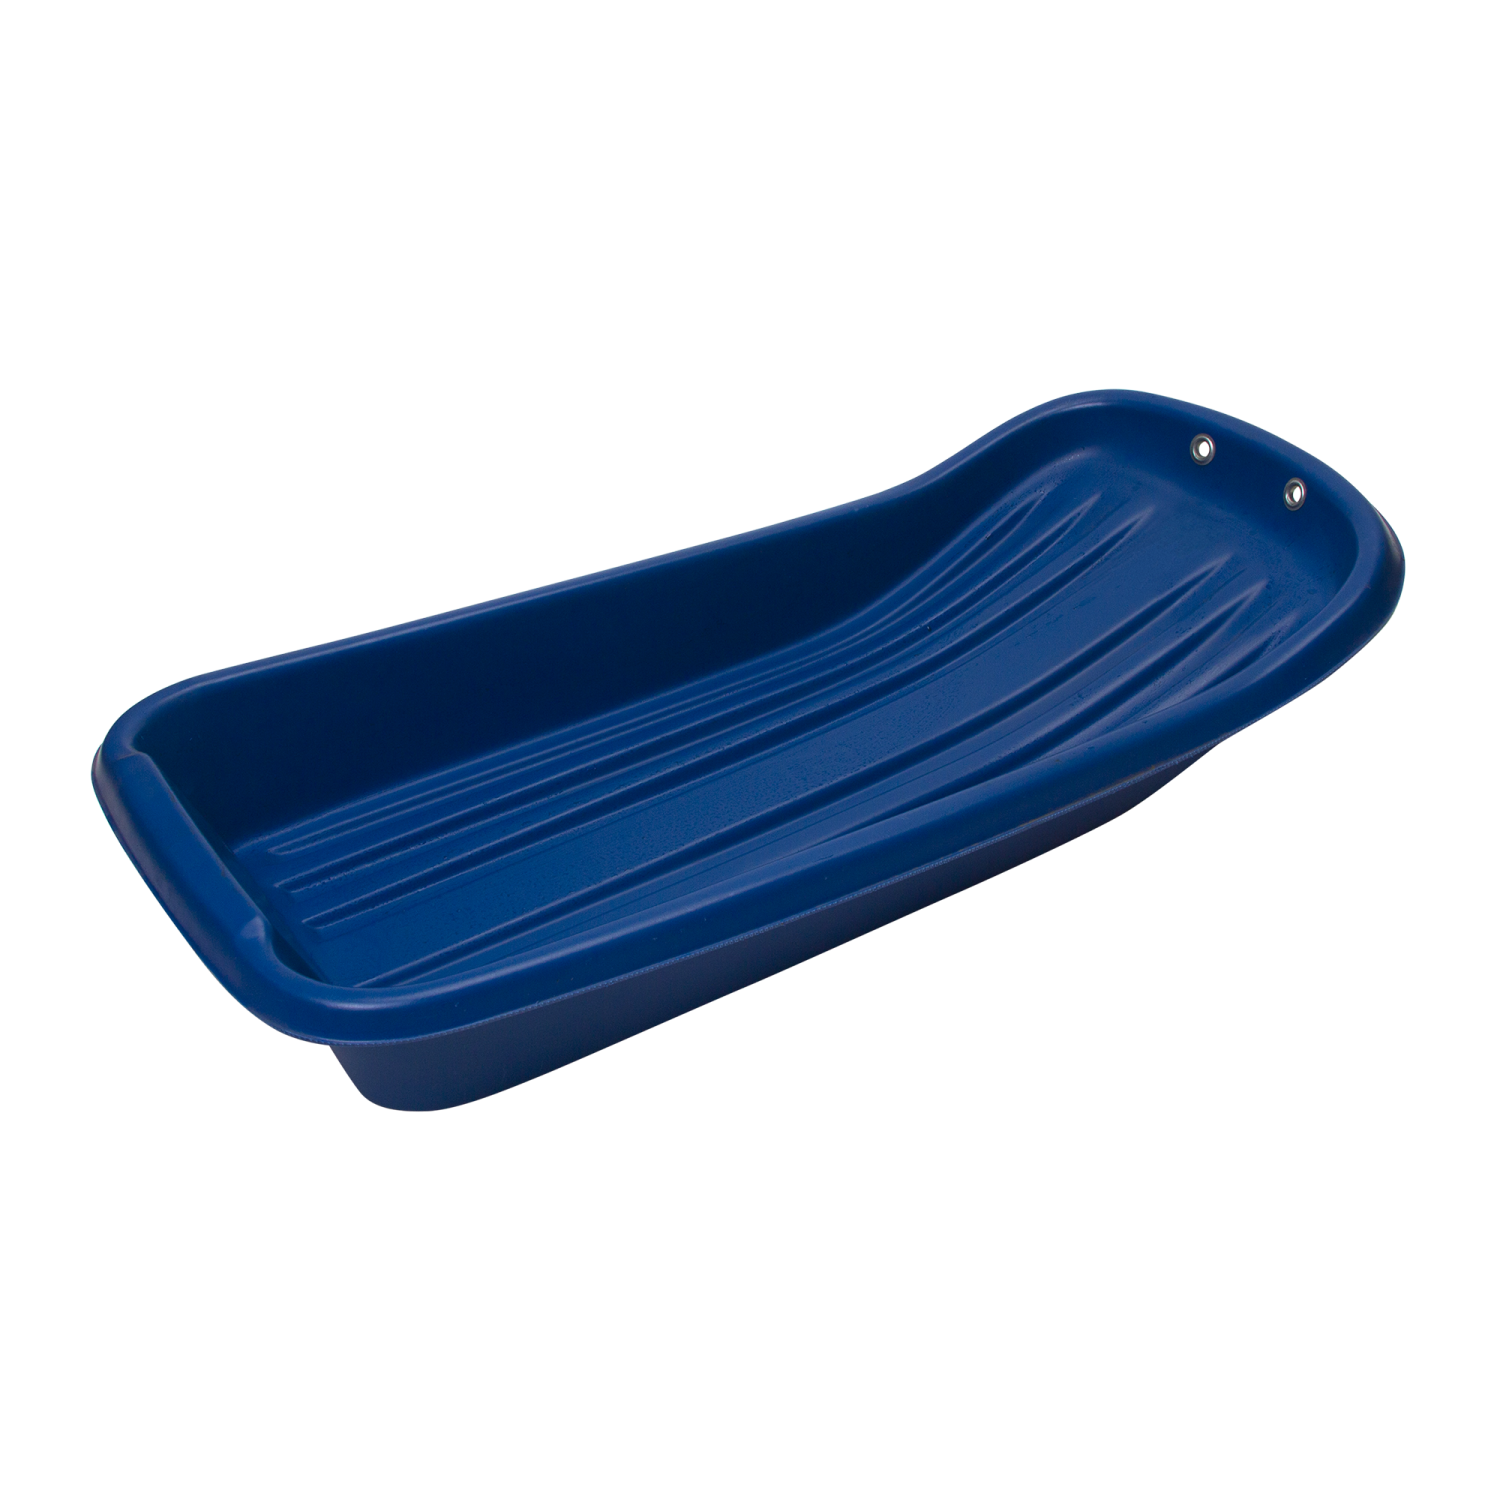 Санки-ледянки рыбацкие Экструзион С-1 880x400x140 синие